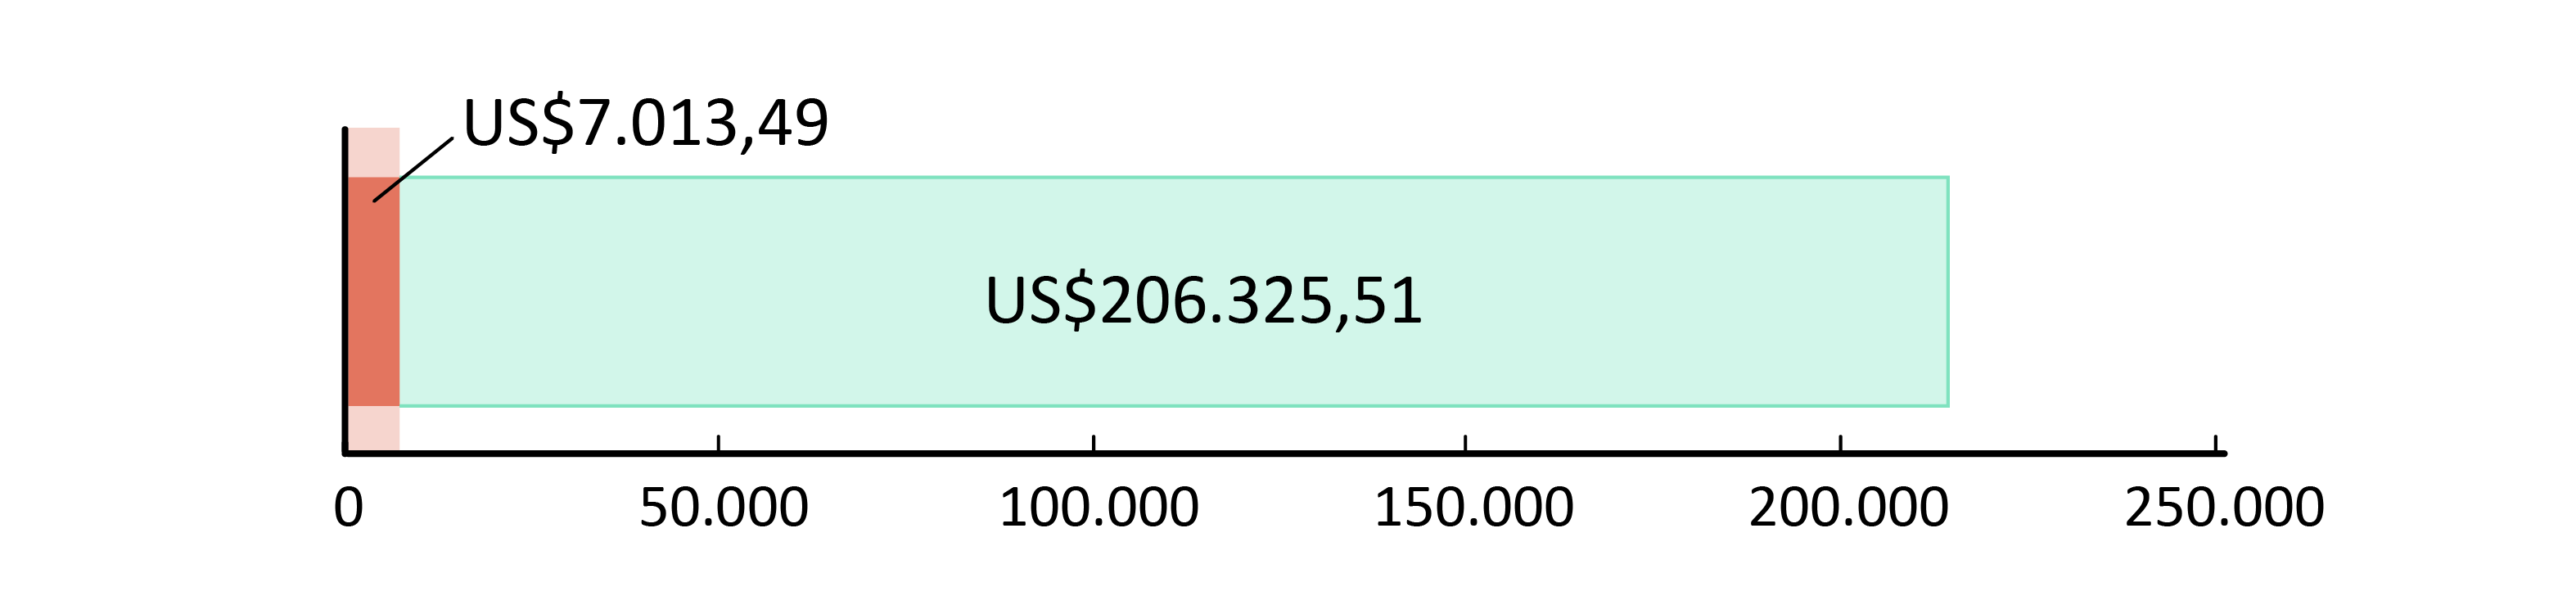 US$7.013,49 gastos; US$206.325,51 em caixa